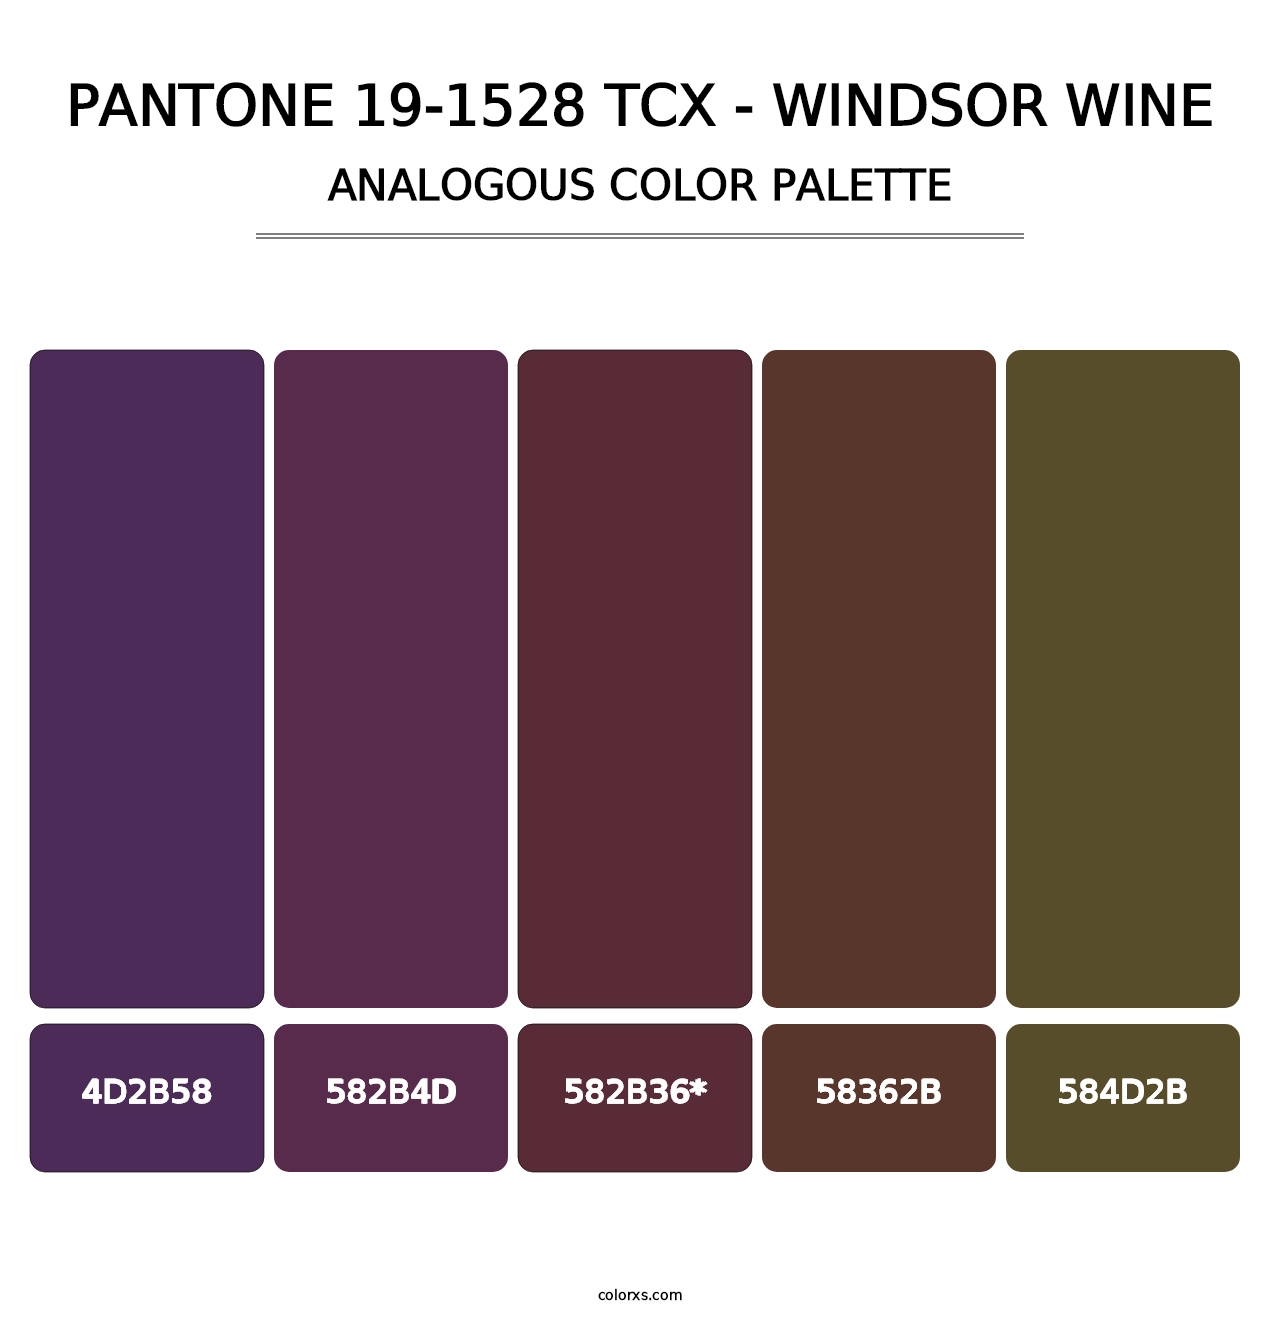 PANTONE 19-1528 TCX - Windsor Wine - Analogous Color Palette